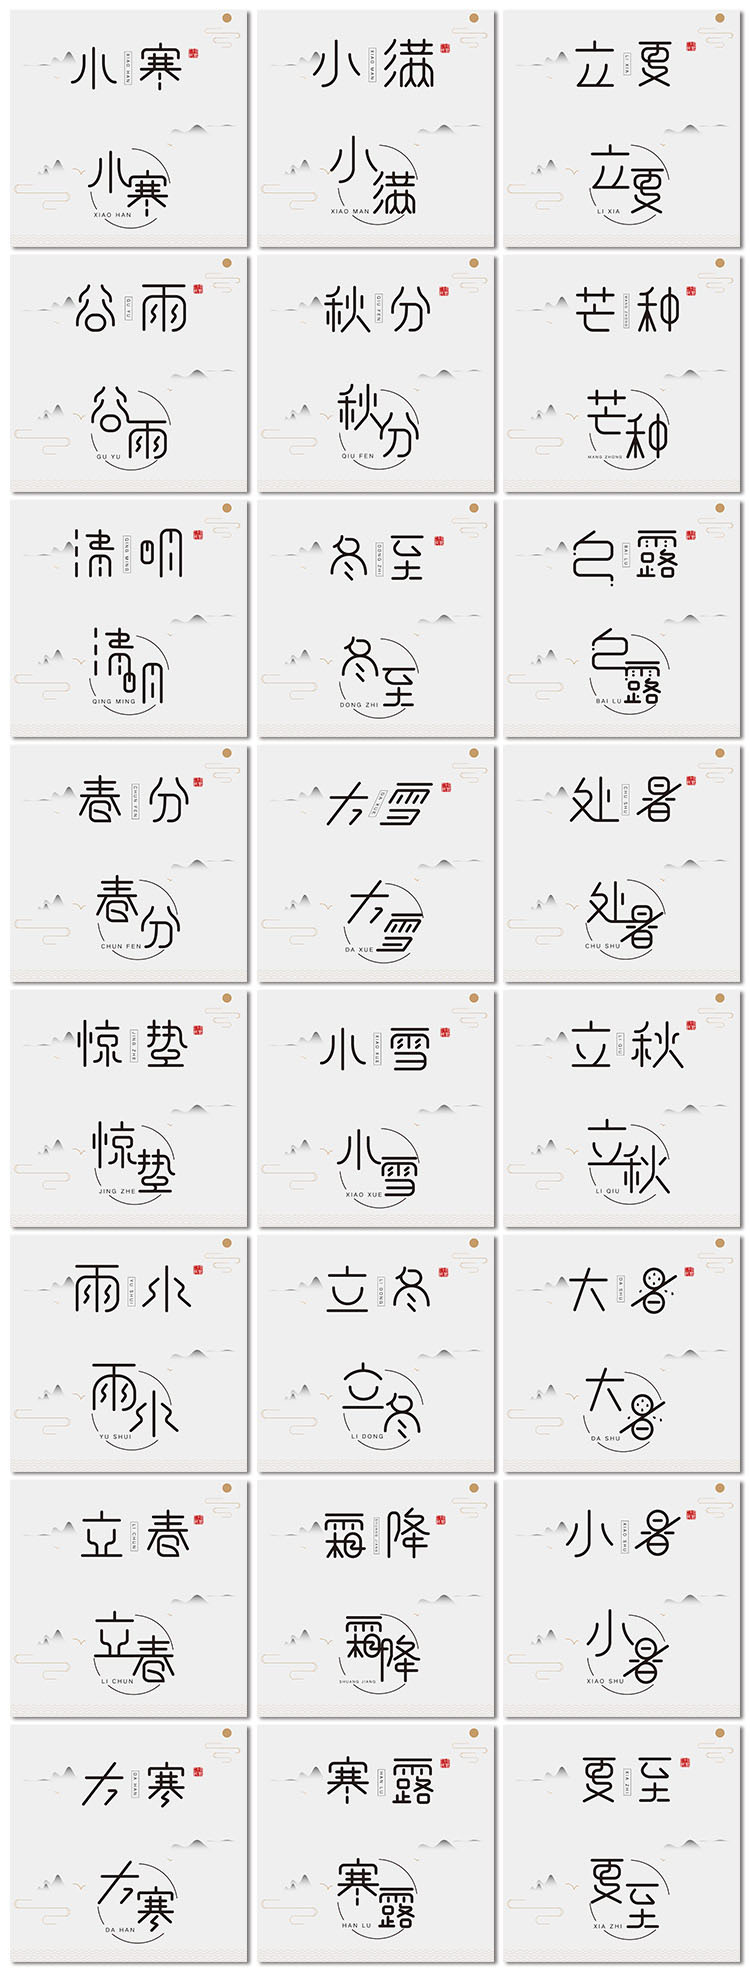 24二十四节气创意中国风传统节日艺术字体海报字体设计模板素材